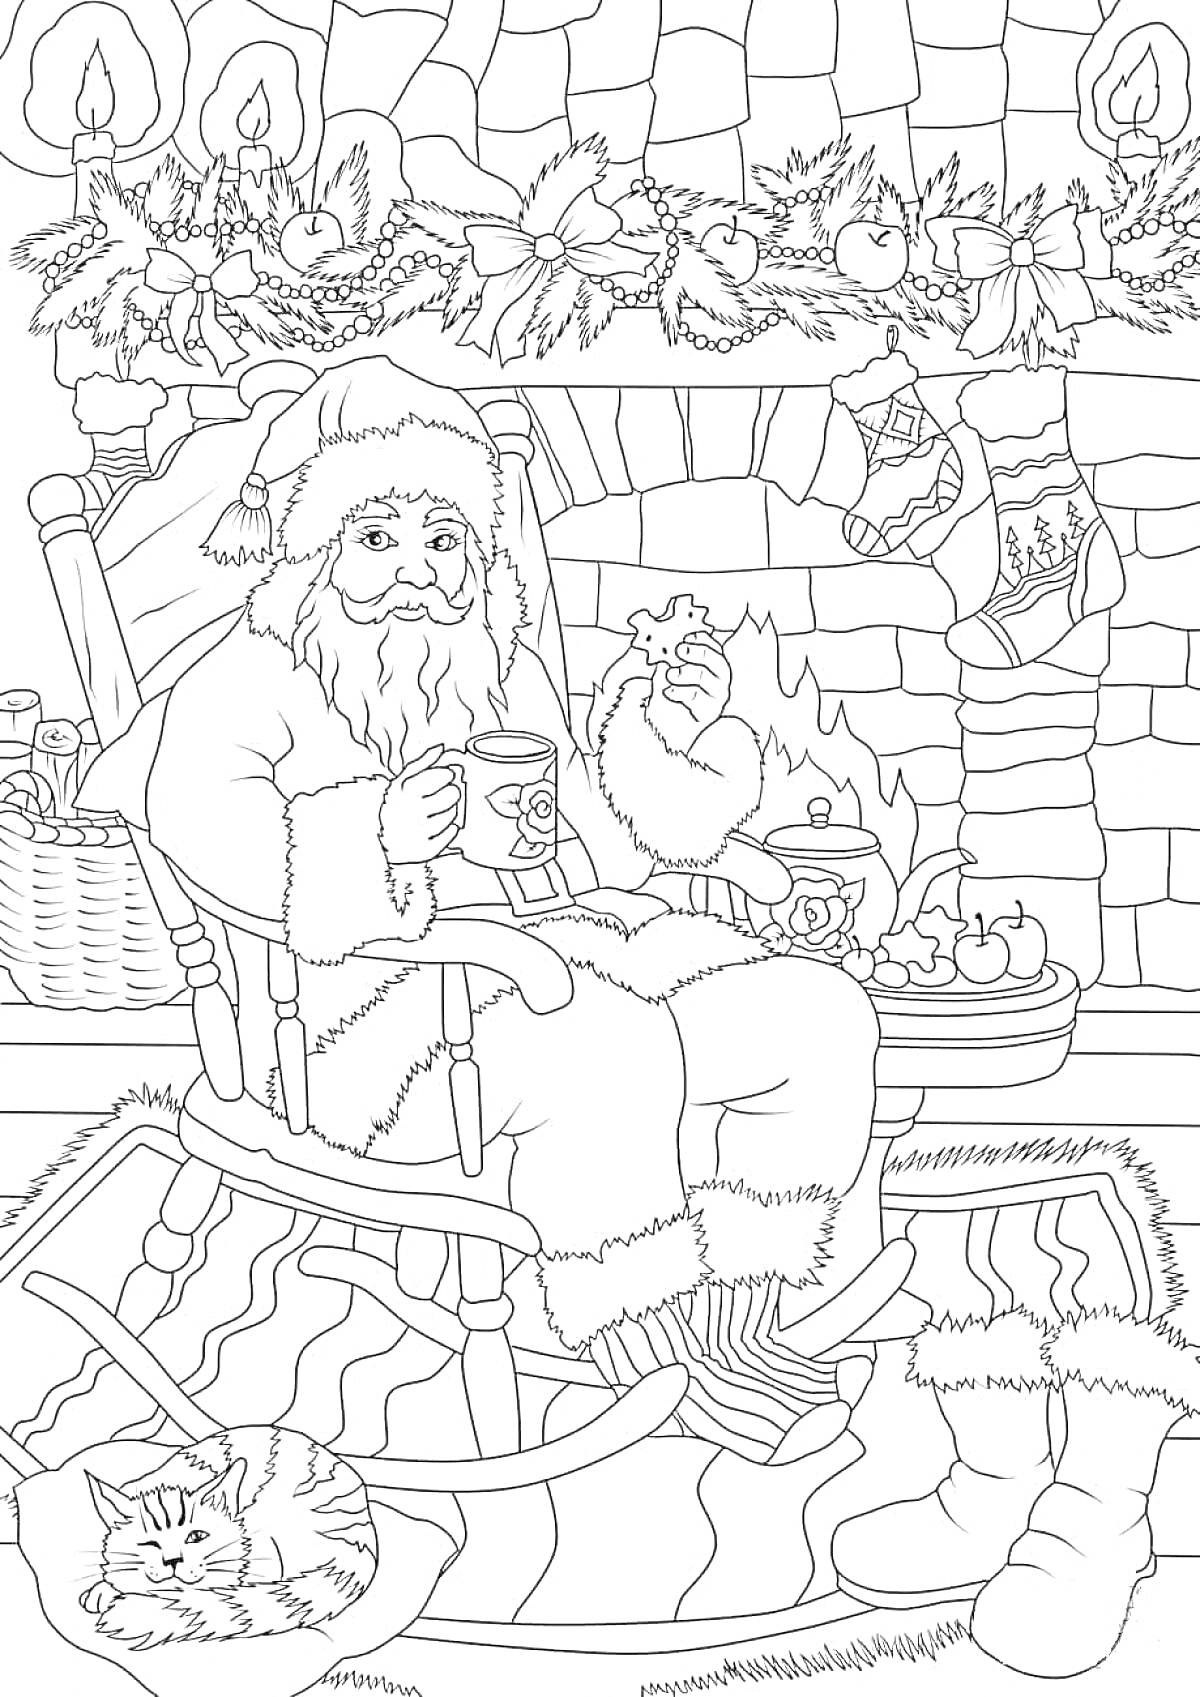 Раскраска Санта Клаус в кресле у камина с рождественским декором, кошкой, чашкой и печеньем.